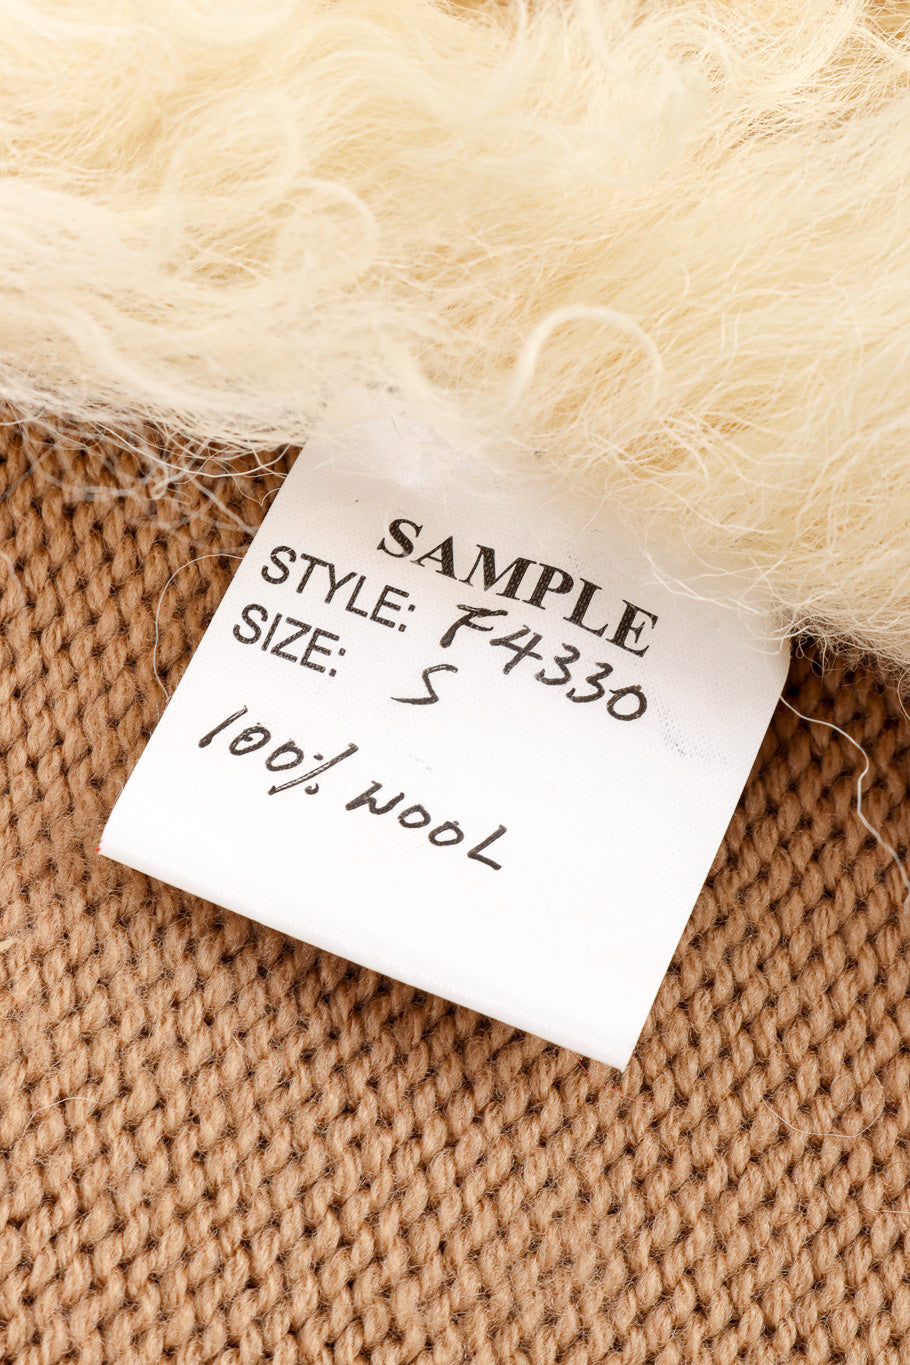 Lambsuede & Wool Knit Jacket by Oscar de la Renta sample tag  @recessla